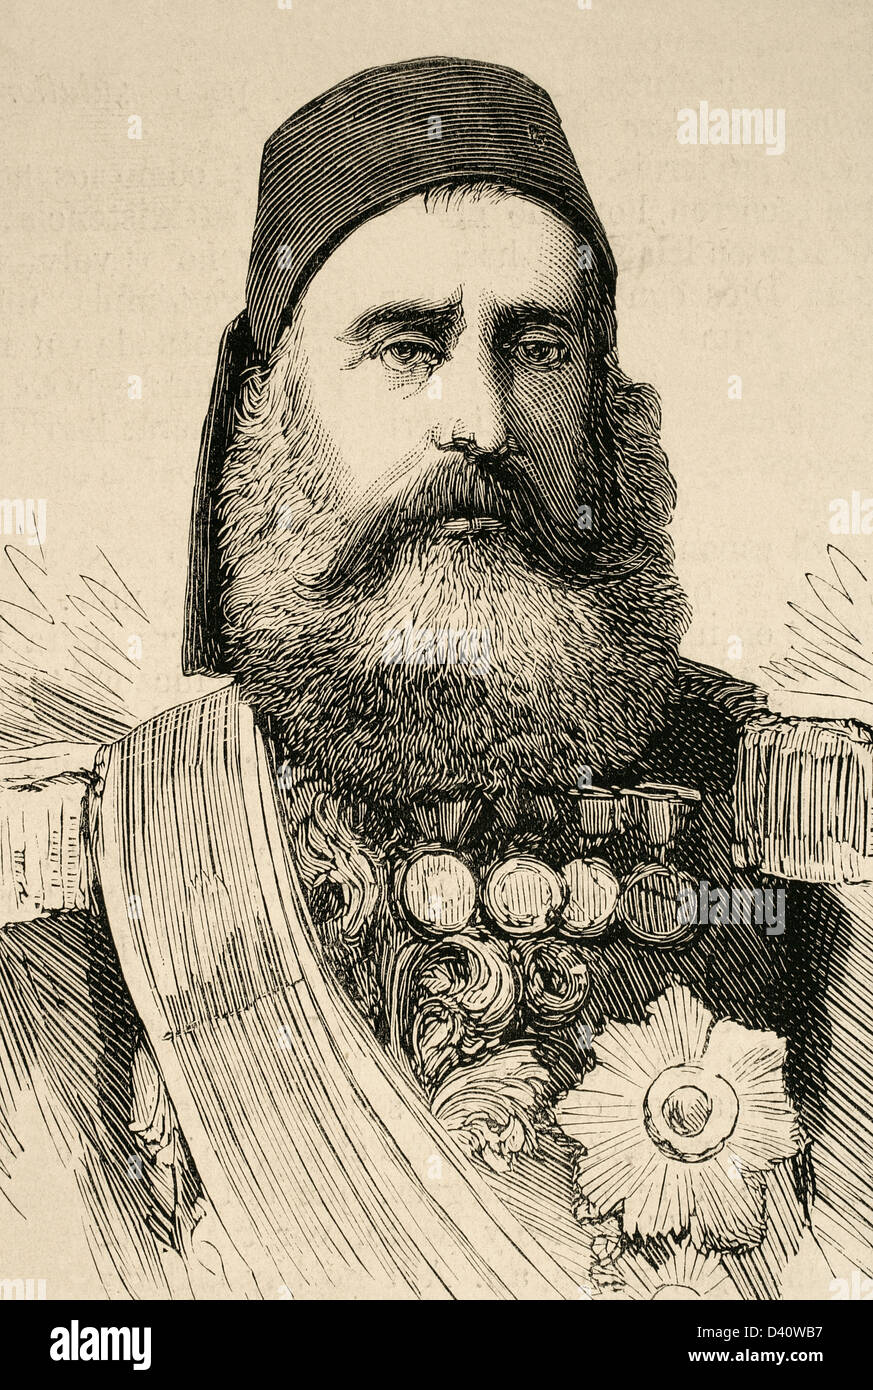 Abdi Pasha. La Turchia Ottoman comandante in capo dei Circassi. Incisione in spagnolo e illustrazione americana, 1877. Foto Stock